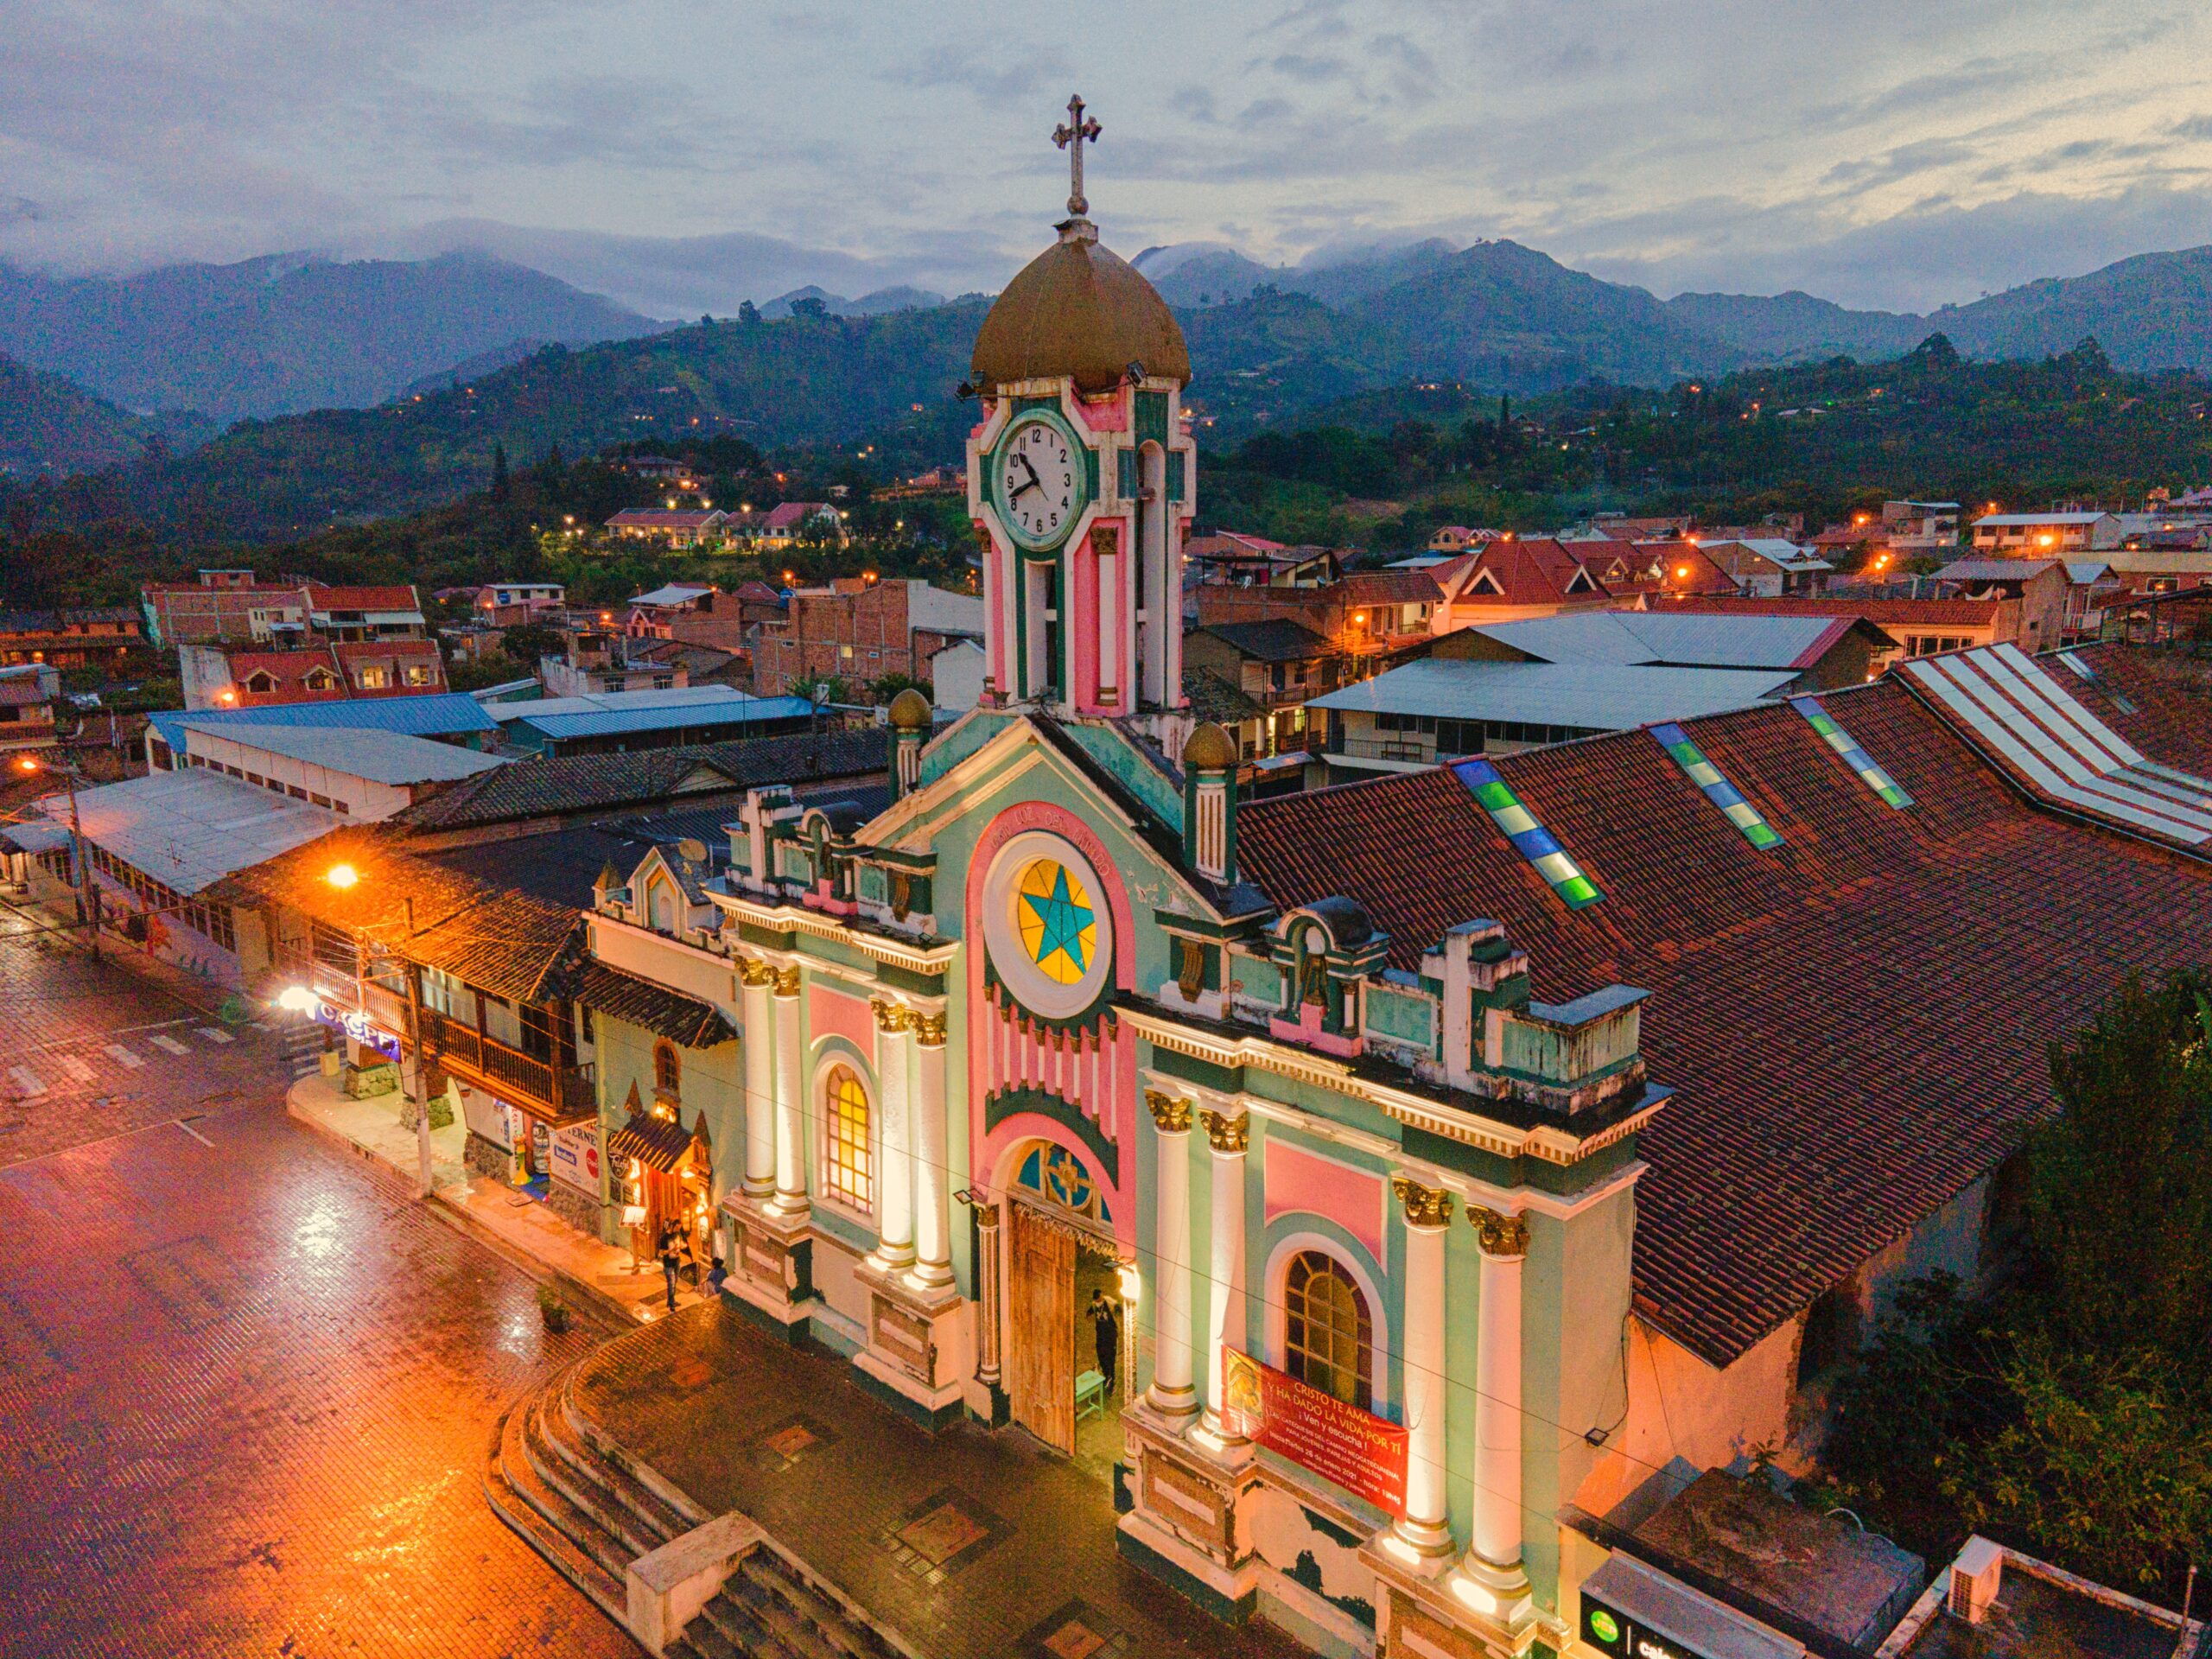 Vilcabamba, Ecuador